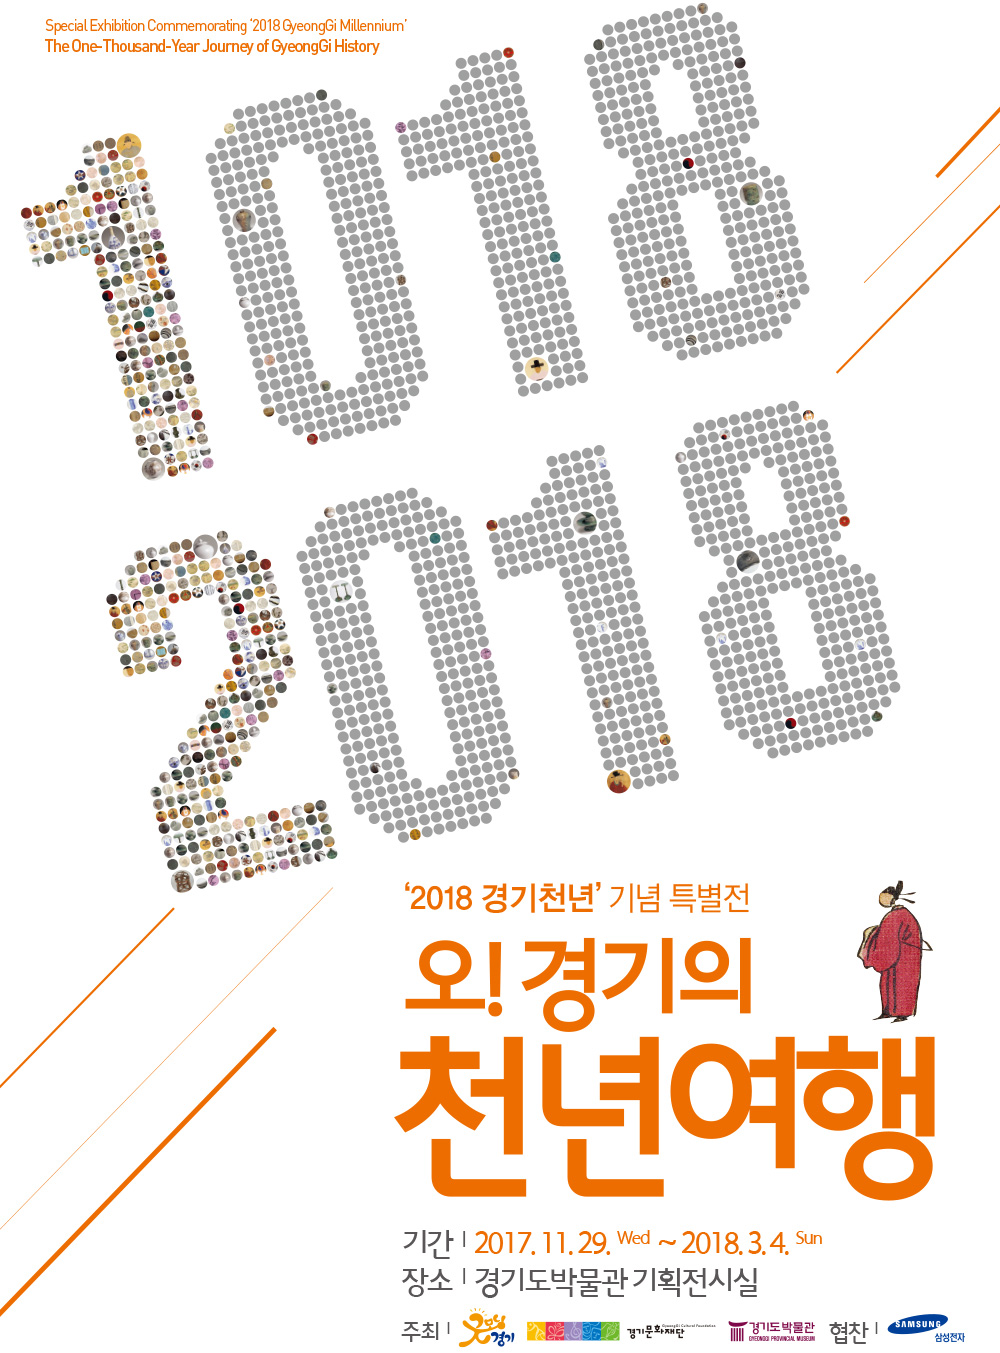 ‘2018 경기천년’ 기념 특별전 《오!경기의 천년여행》